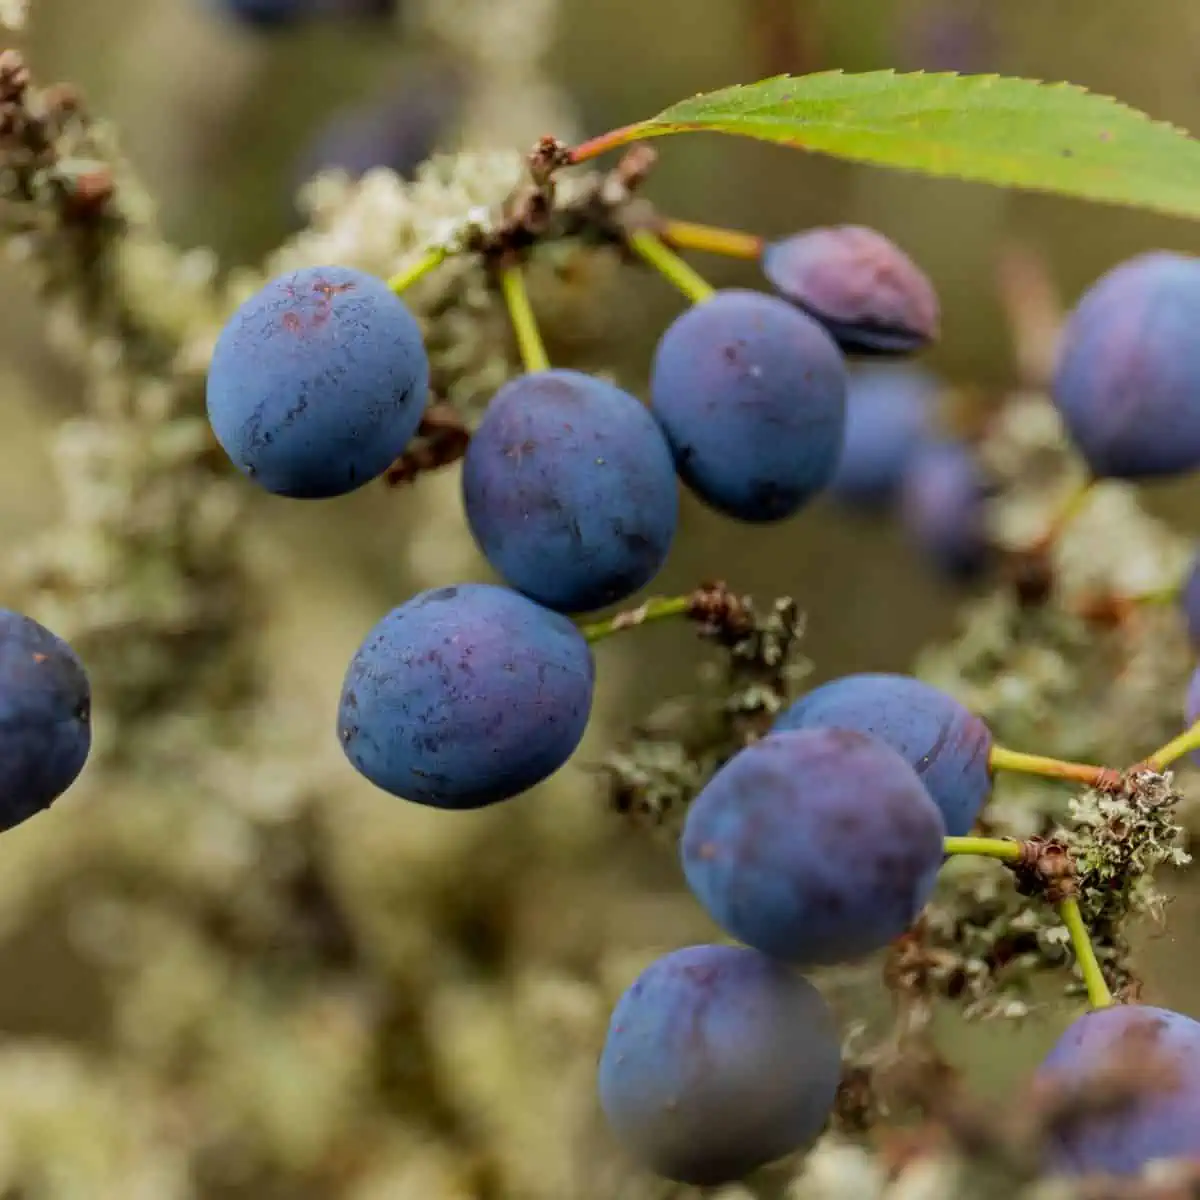 Sloe berries on vine. 